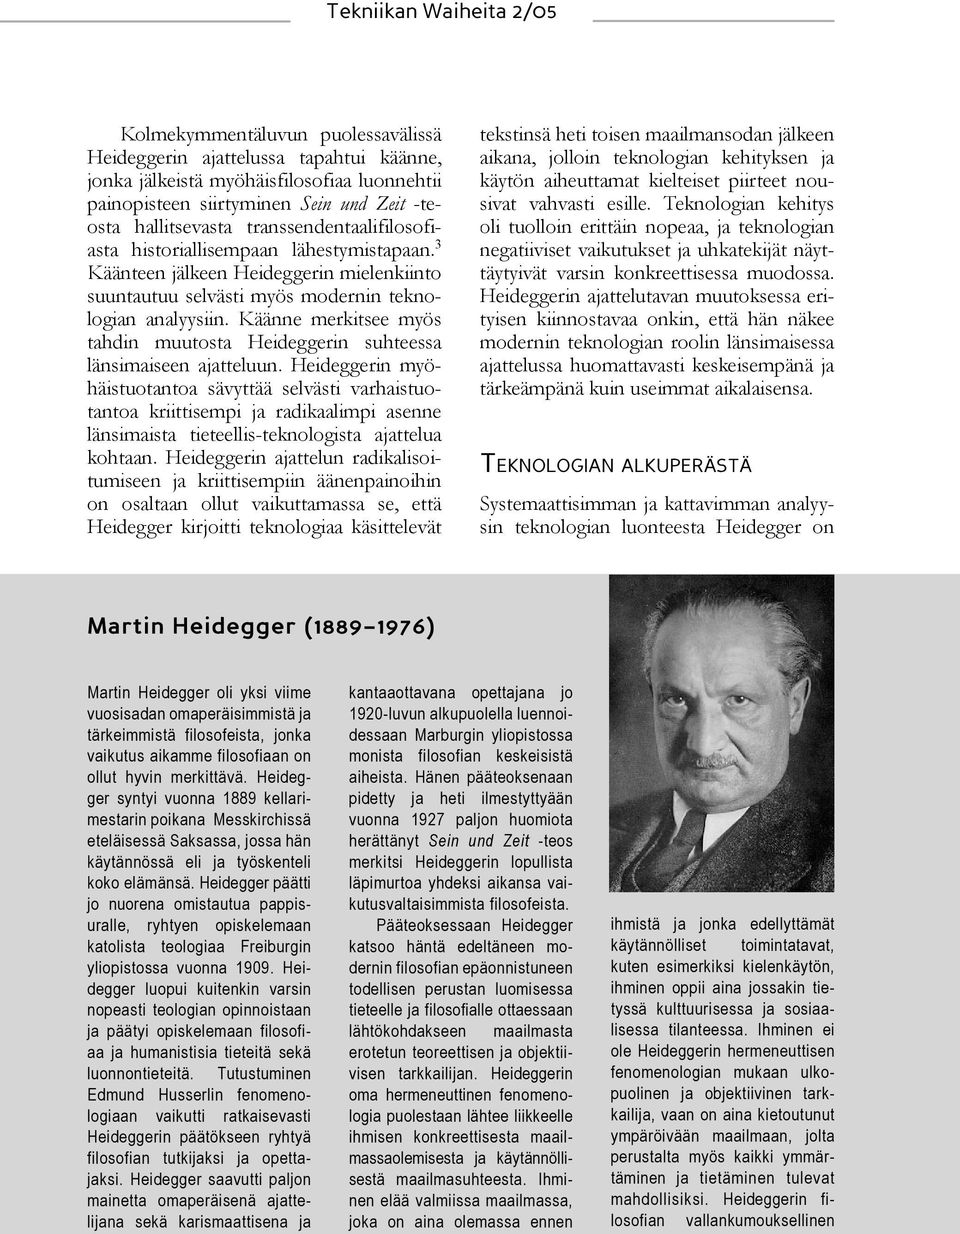 Käänne merkitsee myös tahdin muutosta Heideggerin suhteessa länsimaiseen ajatteluun.